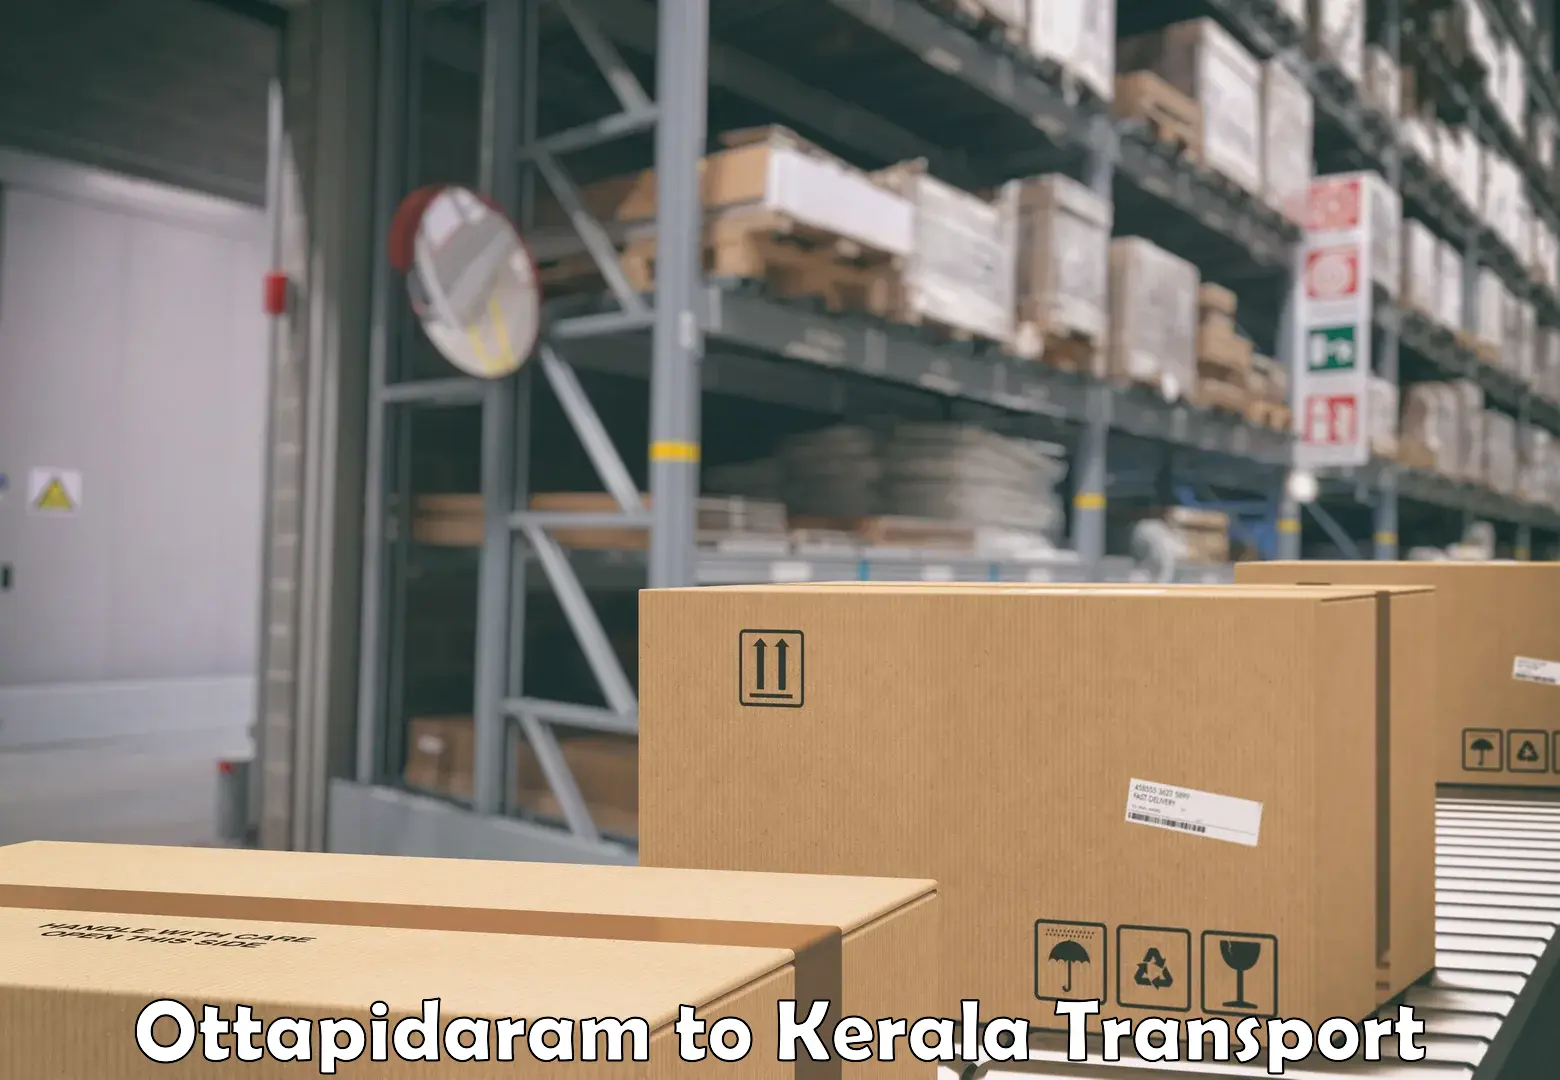 Truck transport companies in India Ottapidaram to Changanacherry